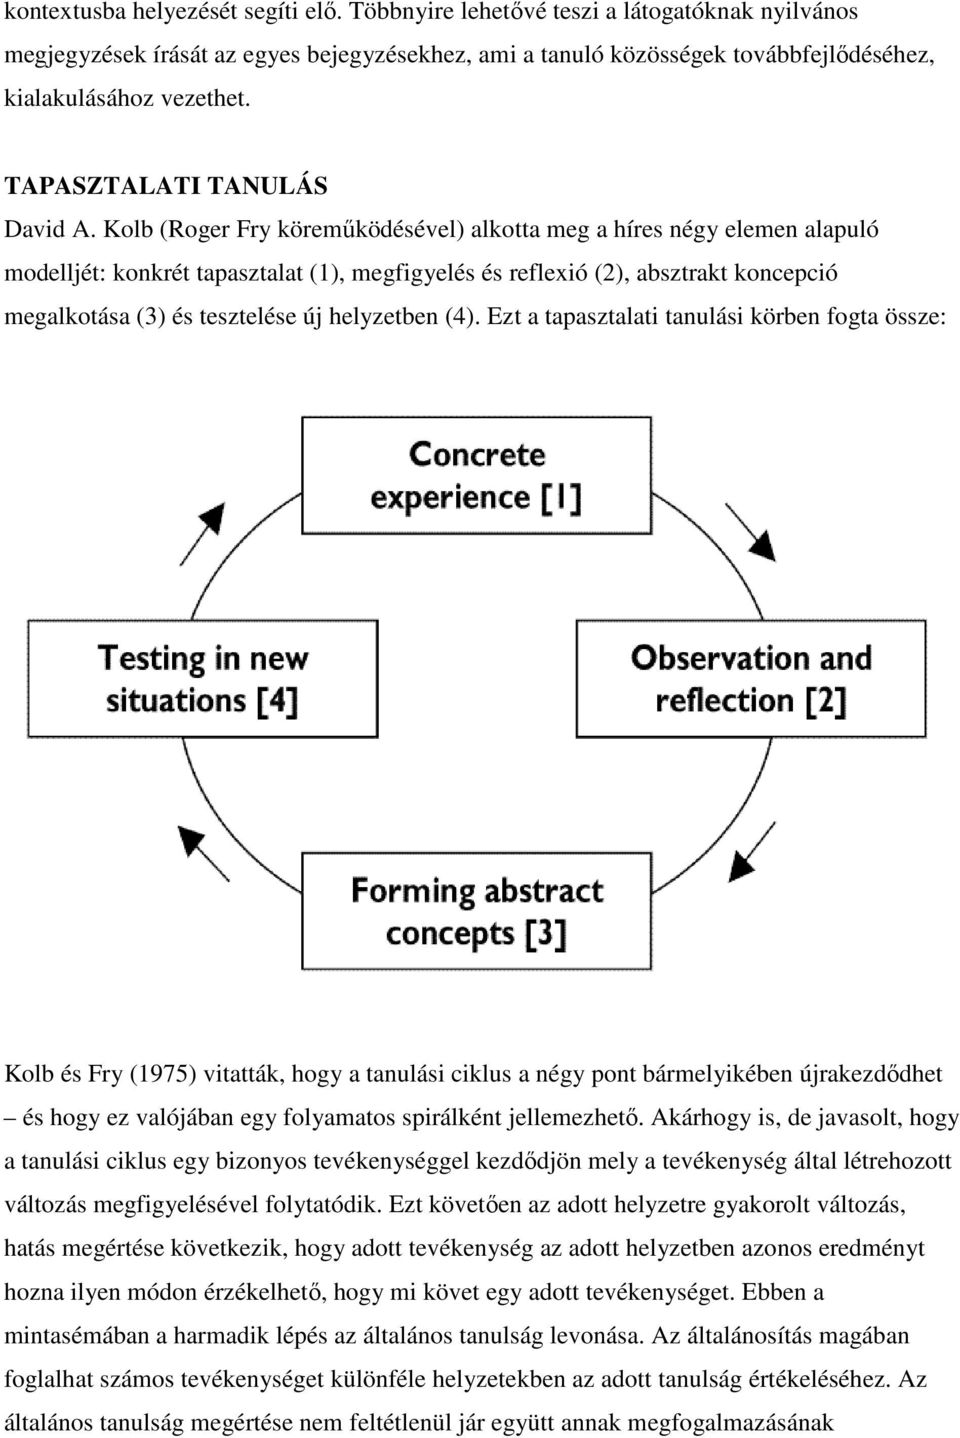 Kolb (Roger Fry köremőködésével) alkotta meg a híres négy elemen alapuló modelljét: konkrét tapasztalat (1), megfigyelés és reflexió (2), absztrakt koncepció megalkotása (3) és tesztelése új